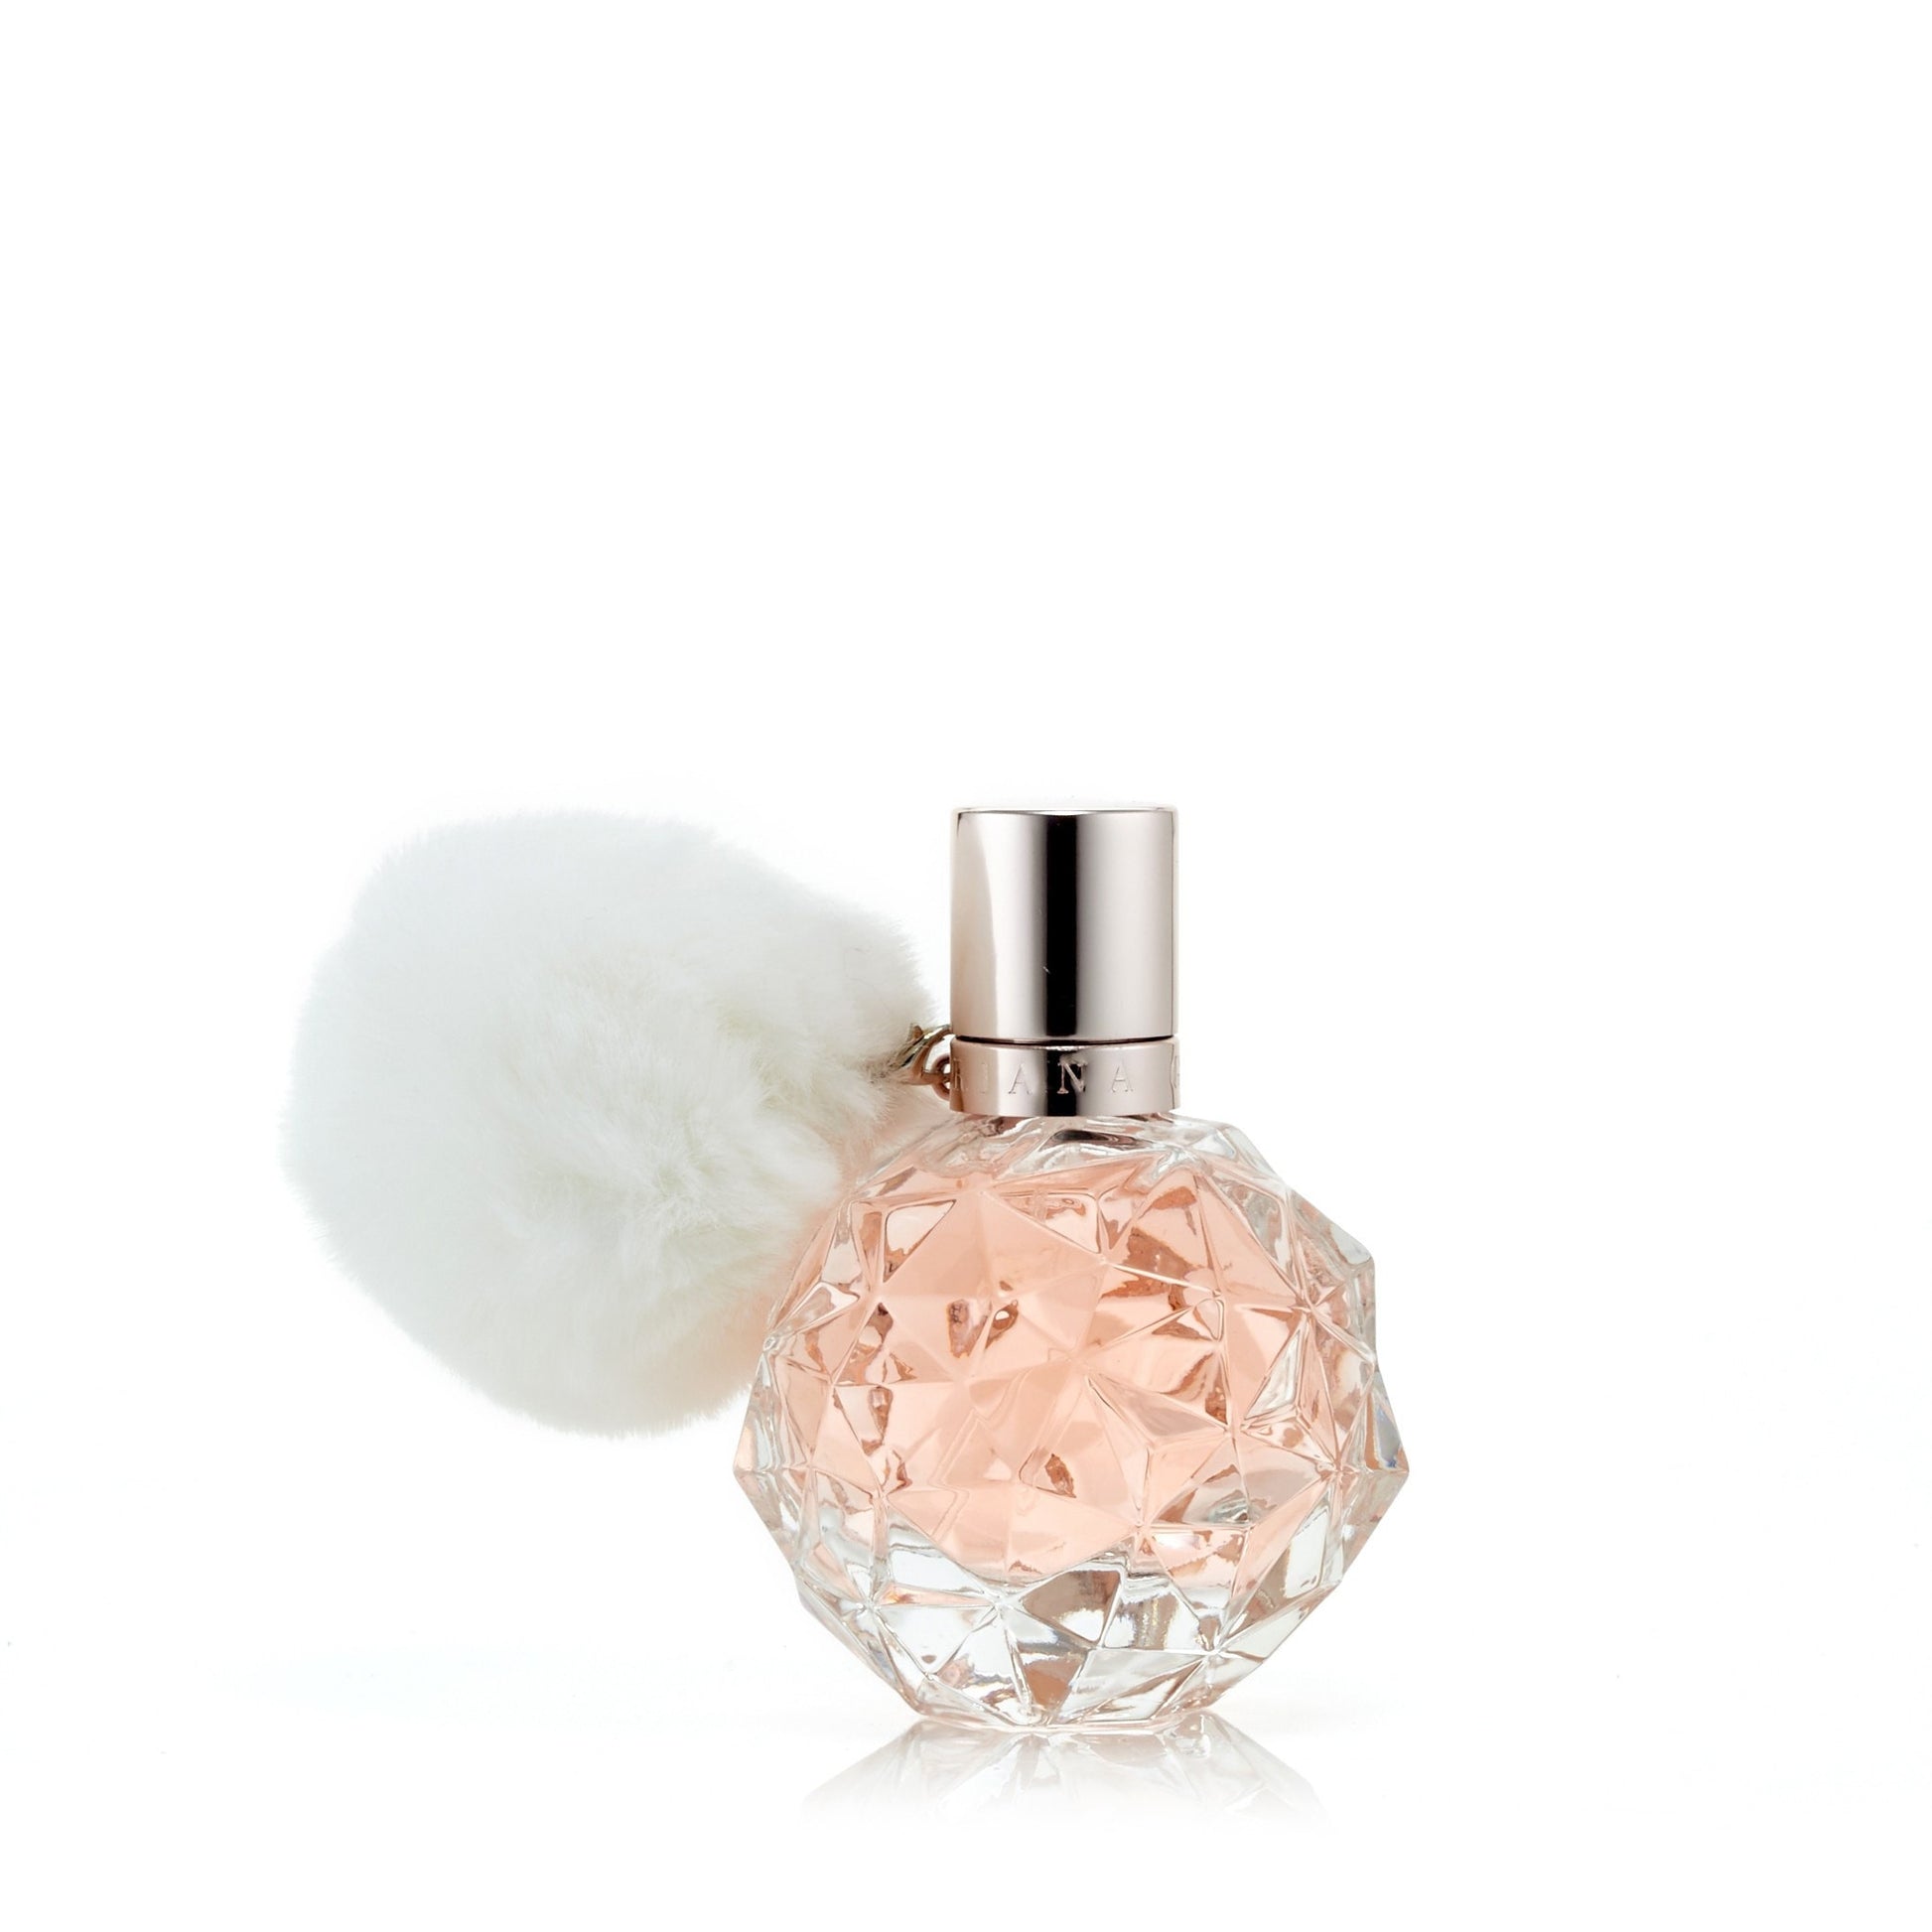 Ari Eau de Parfum Spray for Women by Ariana Grande 1.7 oz. Click to open in modal